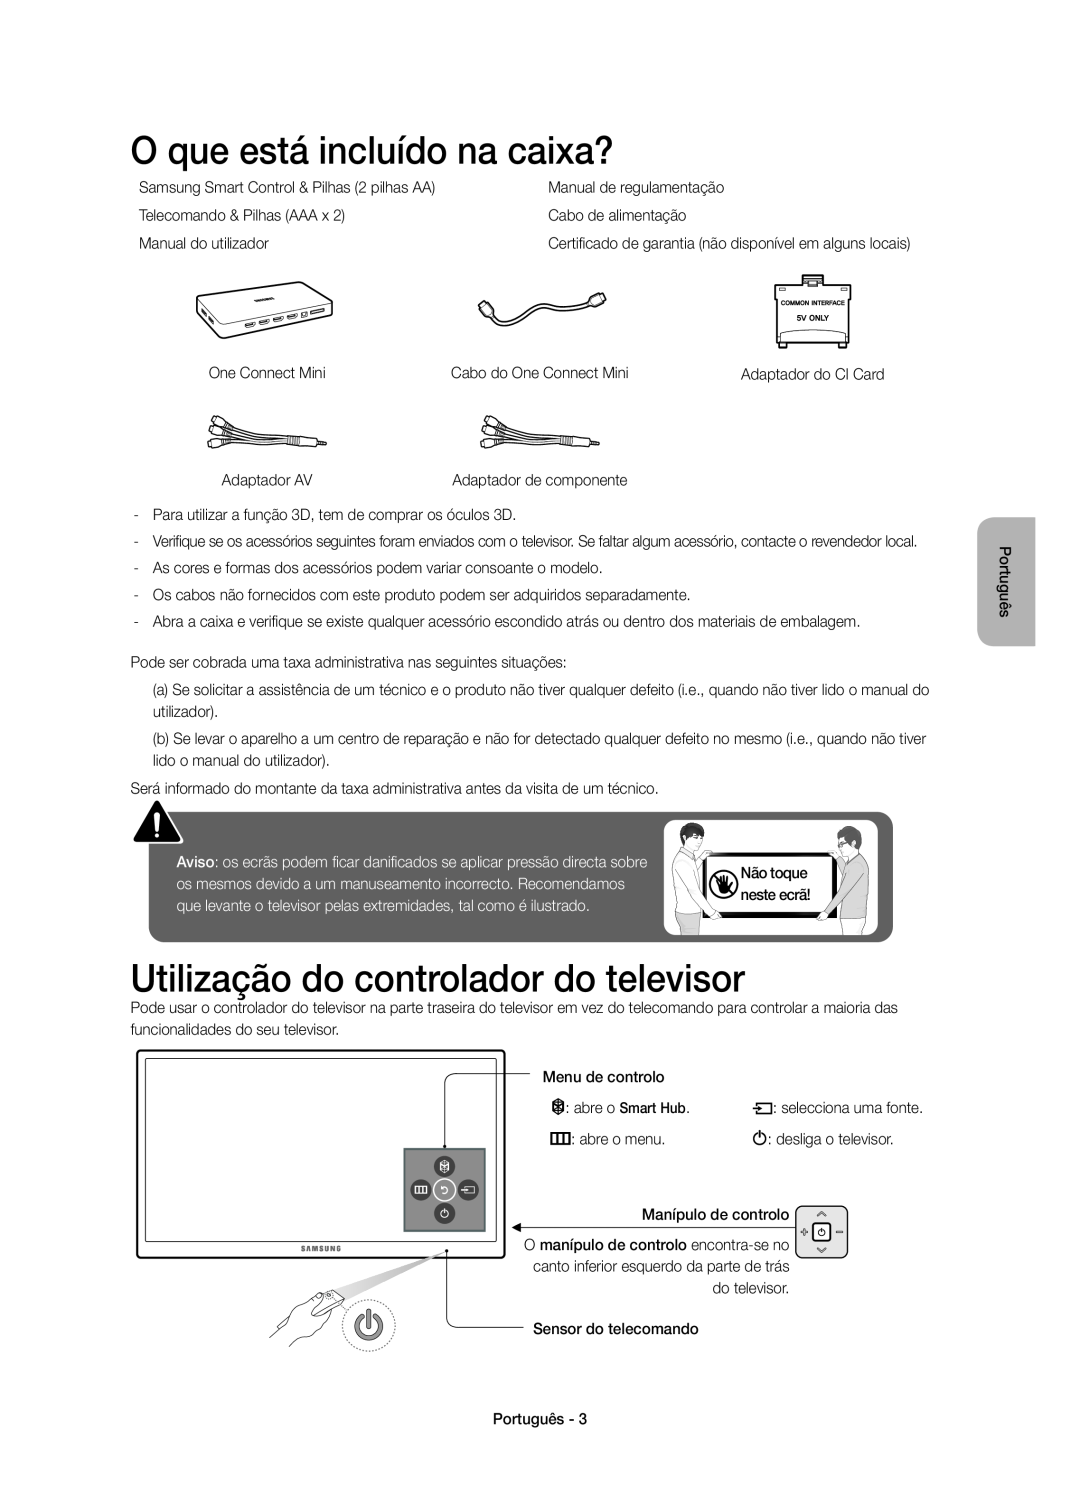 Samsung UE55JU7000TXXC, UE40JU7000TXZF manual O que está incluído na caixa?, Utilização do controlador do televisor 